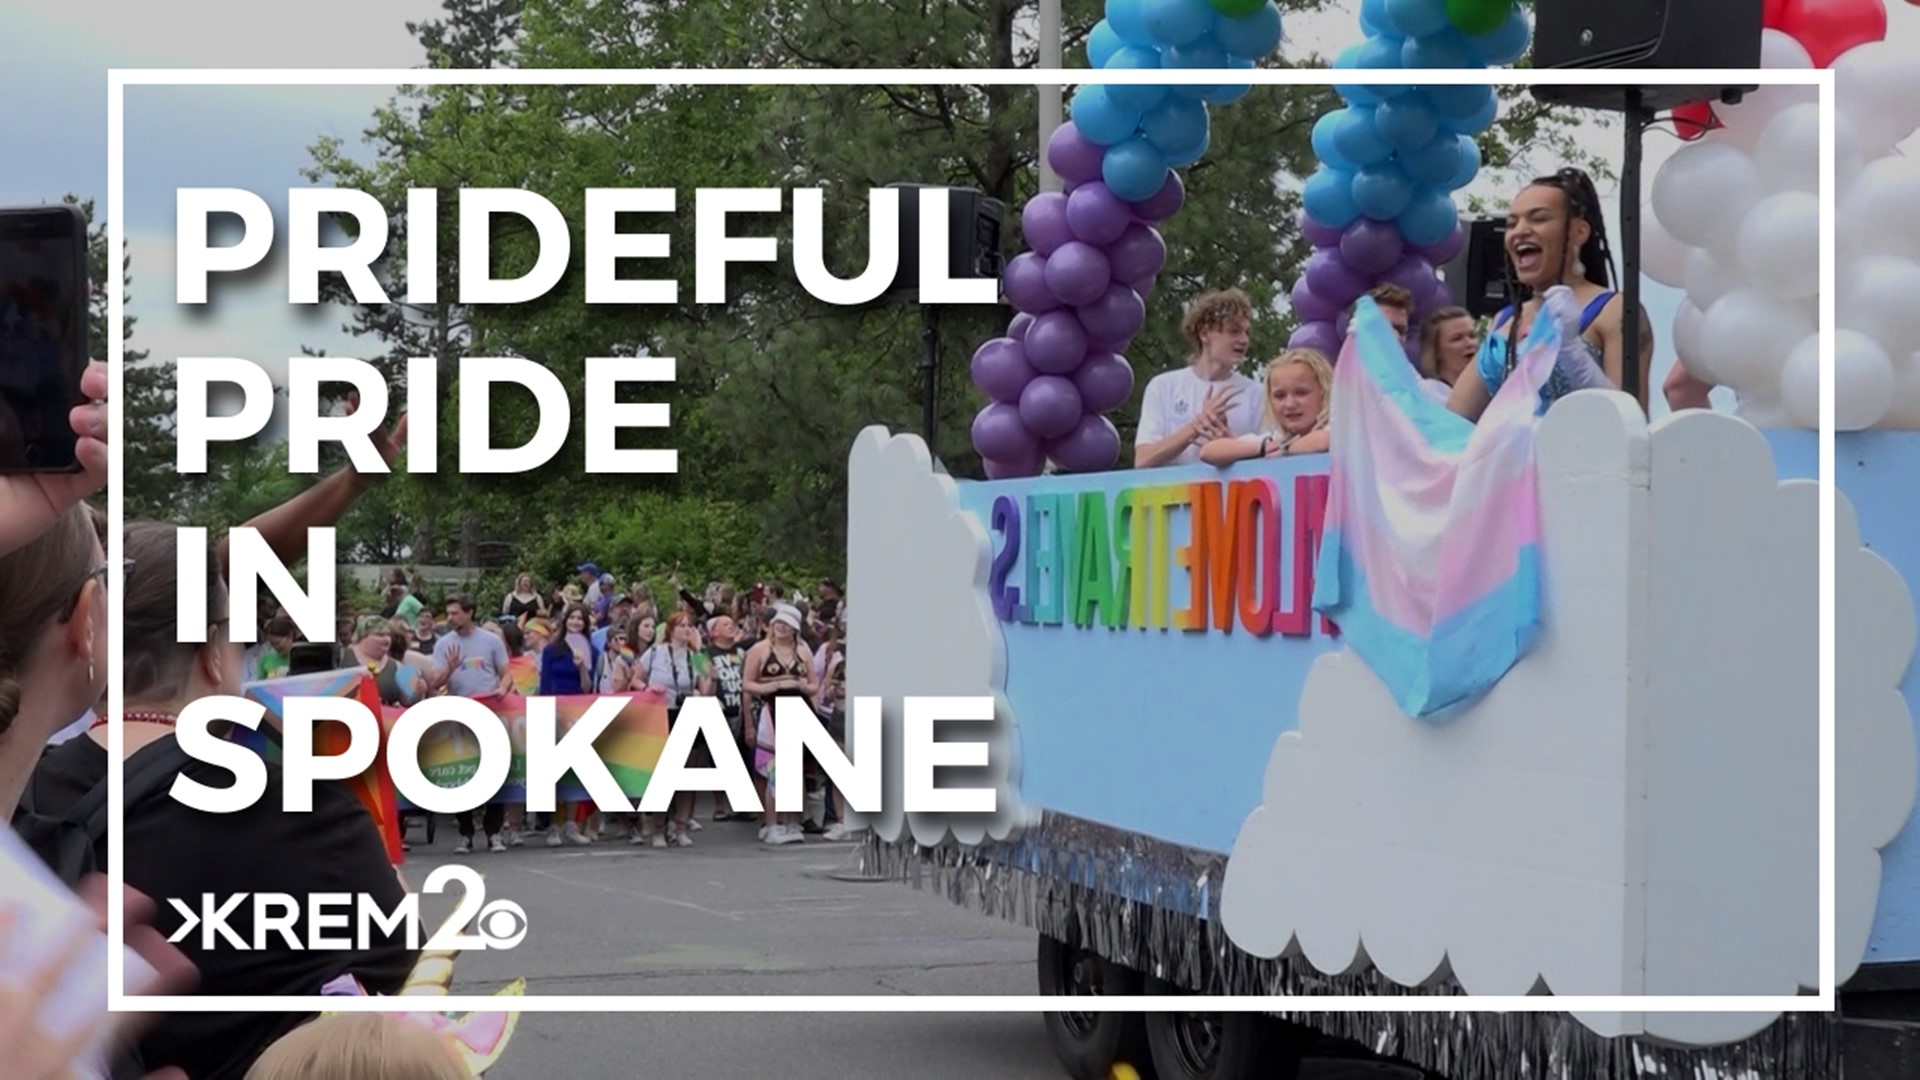 Spokane Pride Parade kicks off June 10